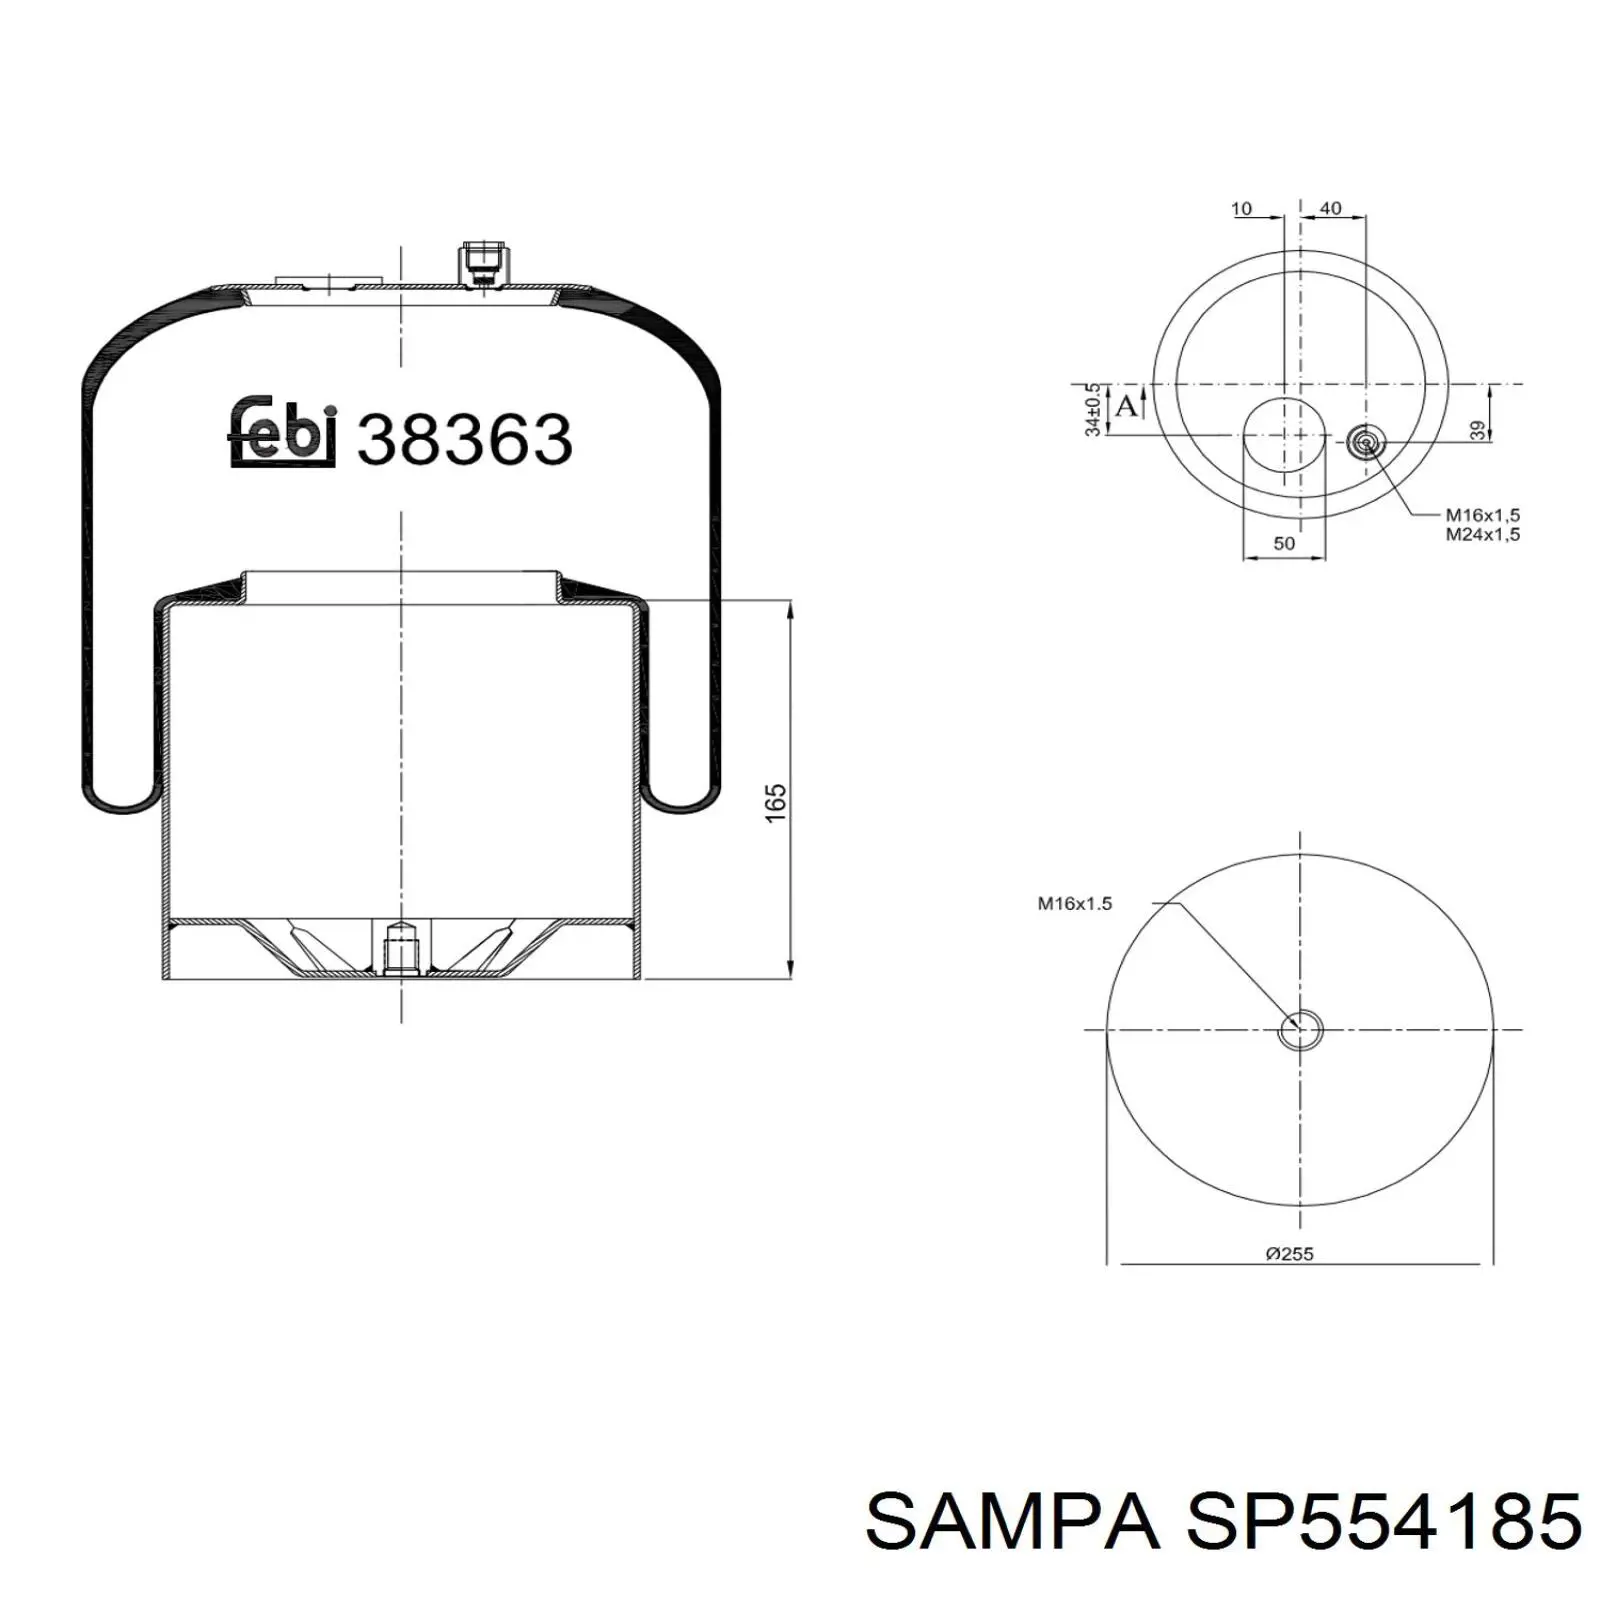 SP554185 Sampa Otomotiv‏ muelle neumático, suspensión, eje trasero